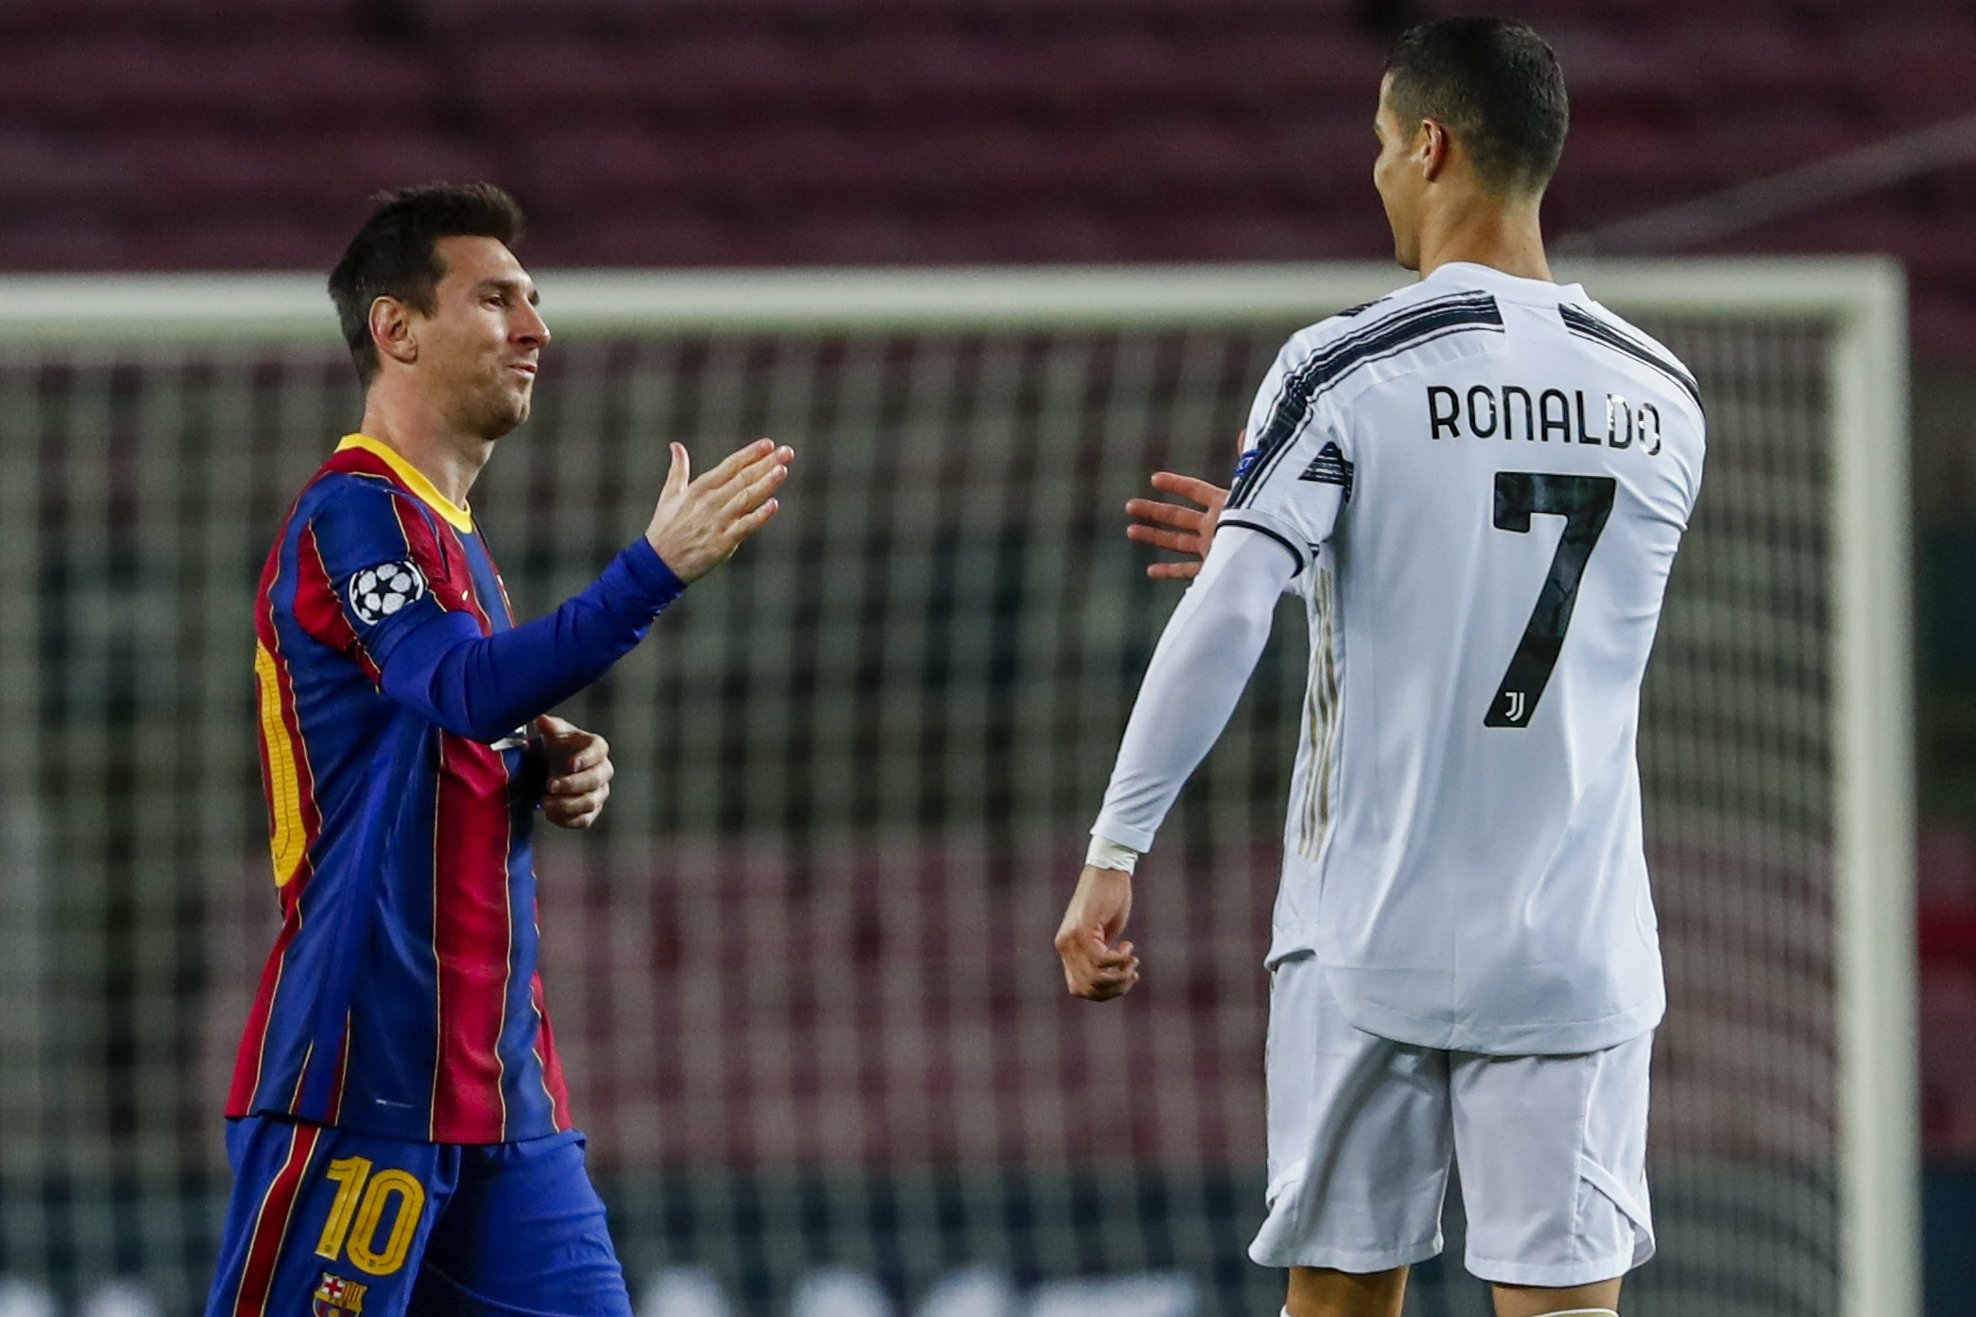 Ronaldo tops Messi with 2 goals as Juventus beats Barcelona 3-0 | Daily Sabah